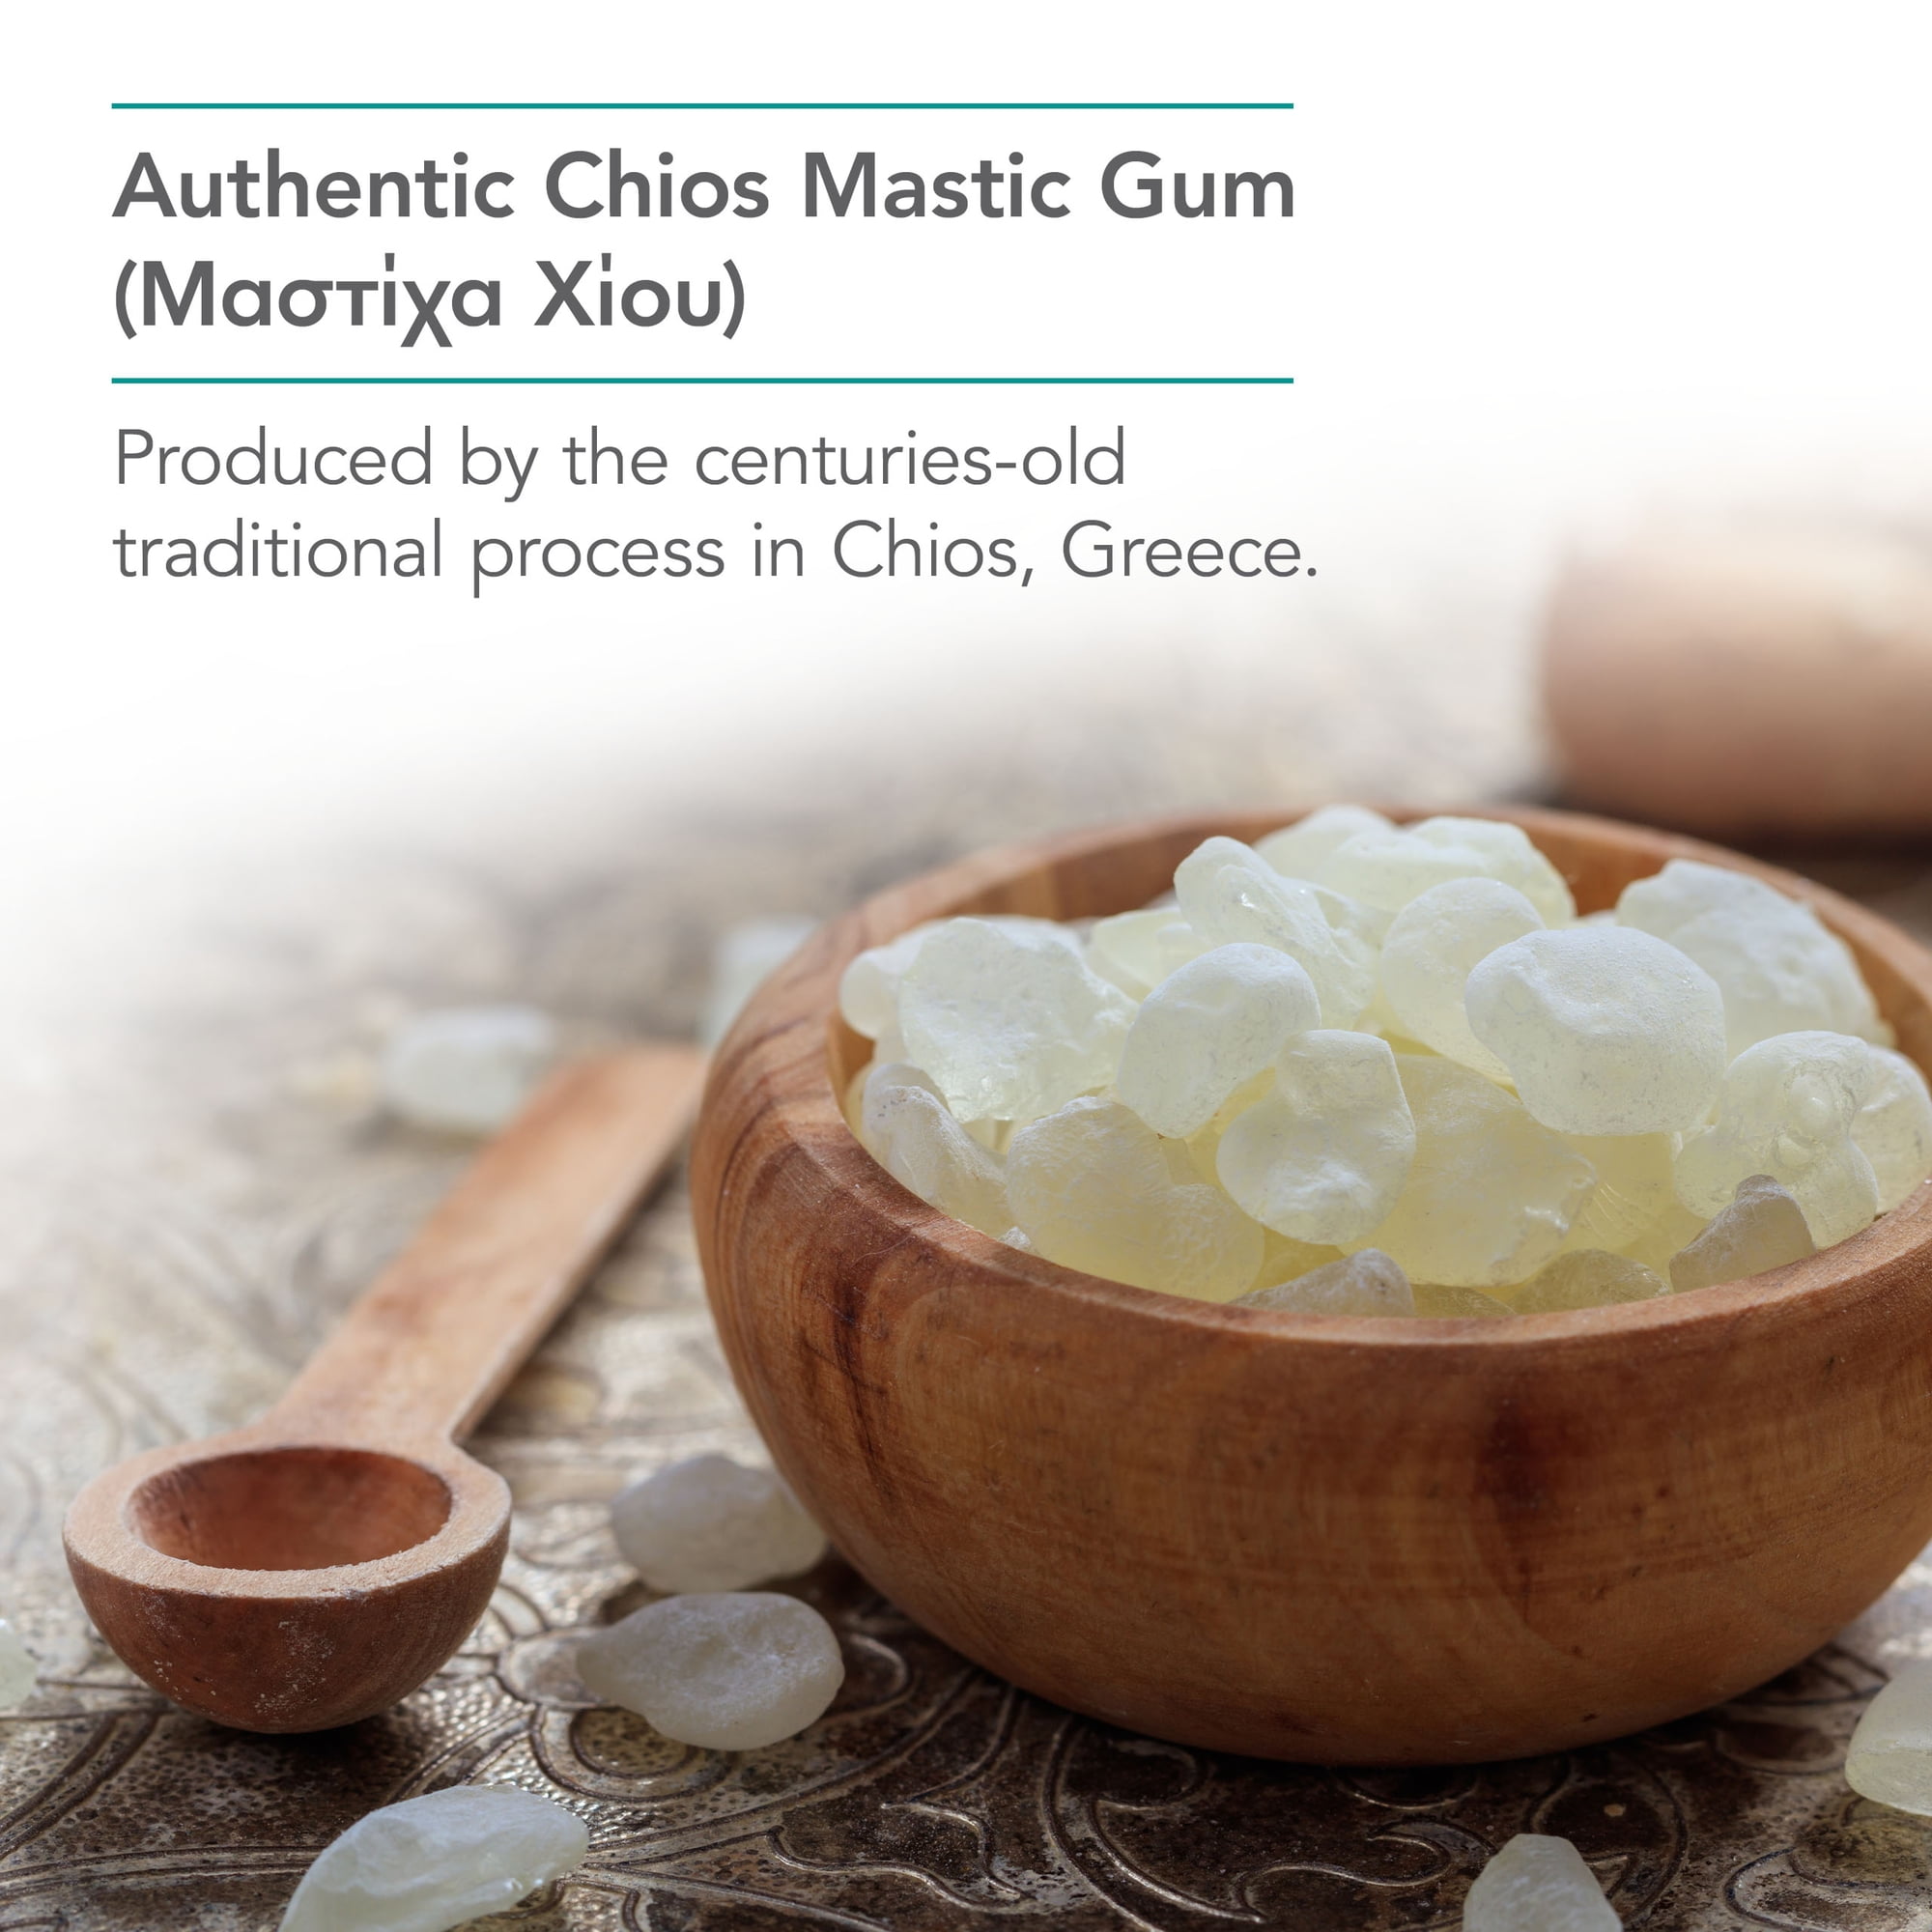 Chios Mastic Gum